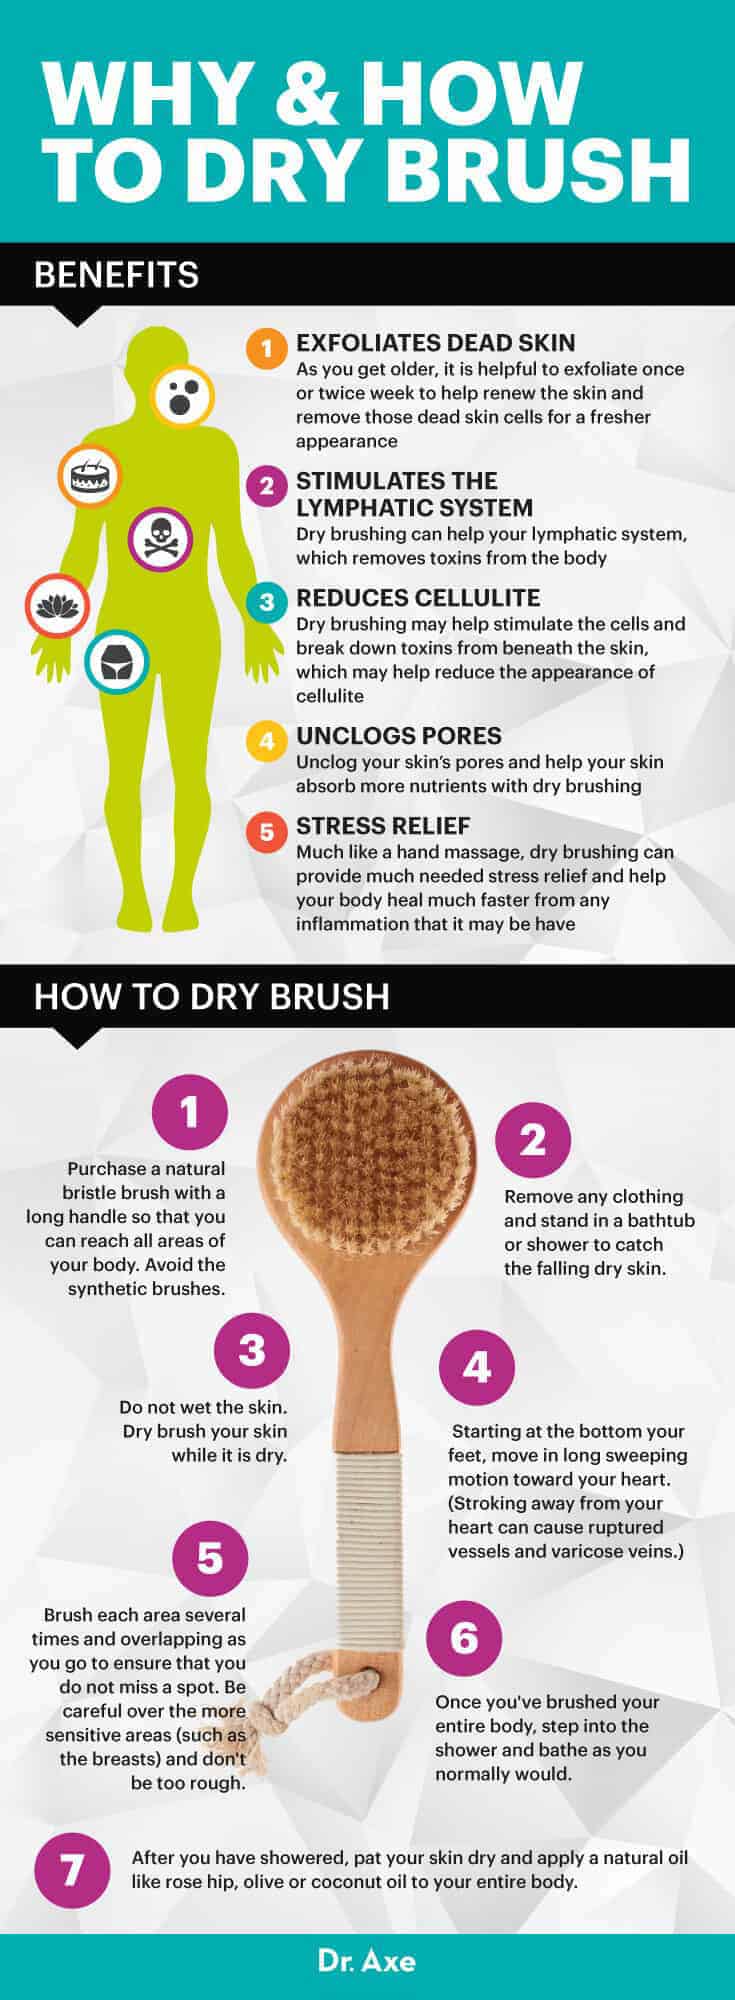 Dry brushing - Dr. Axe